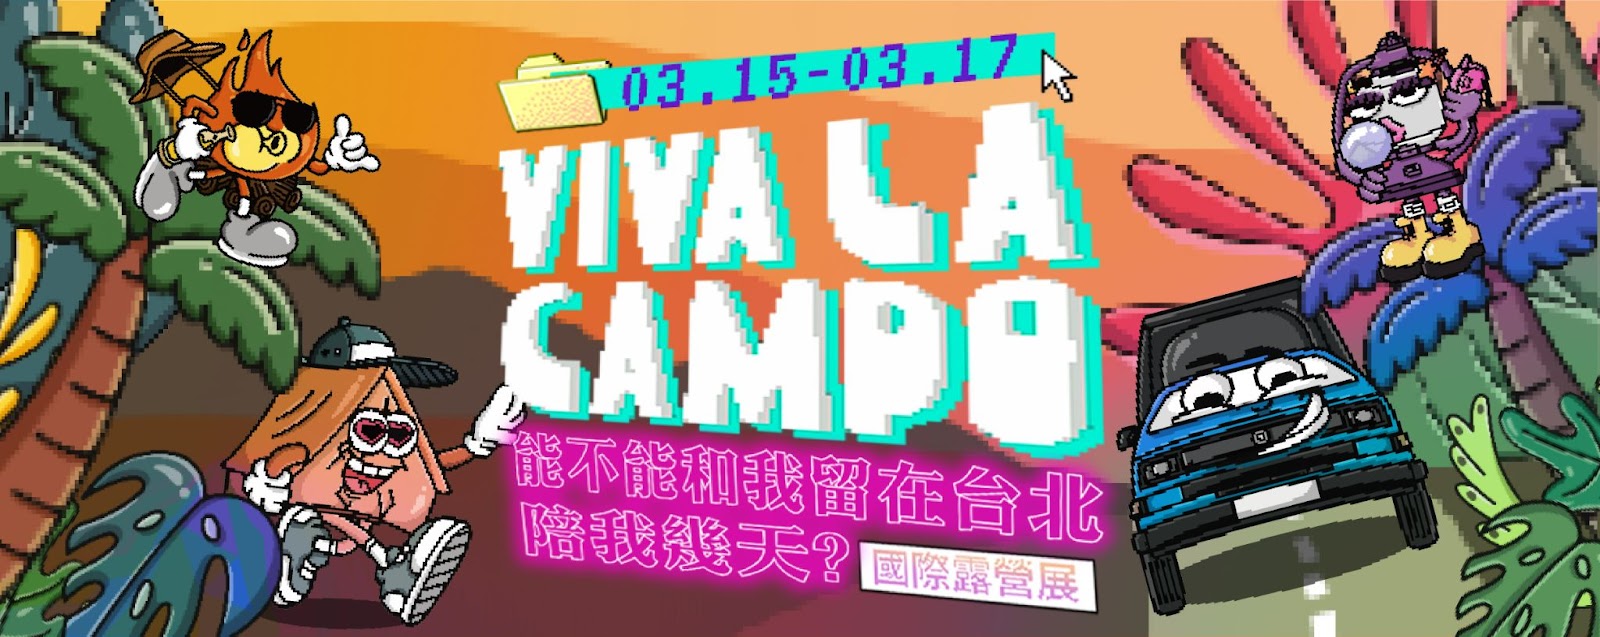 台北,華中露營場,國際露營展,Viva La Campo,VIVA LA CAMPO,台北熱門資訊